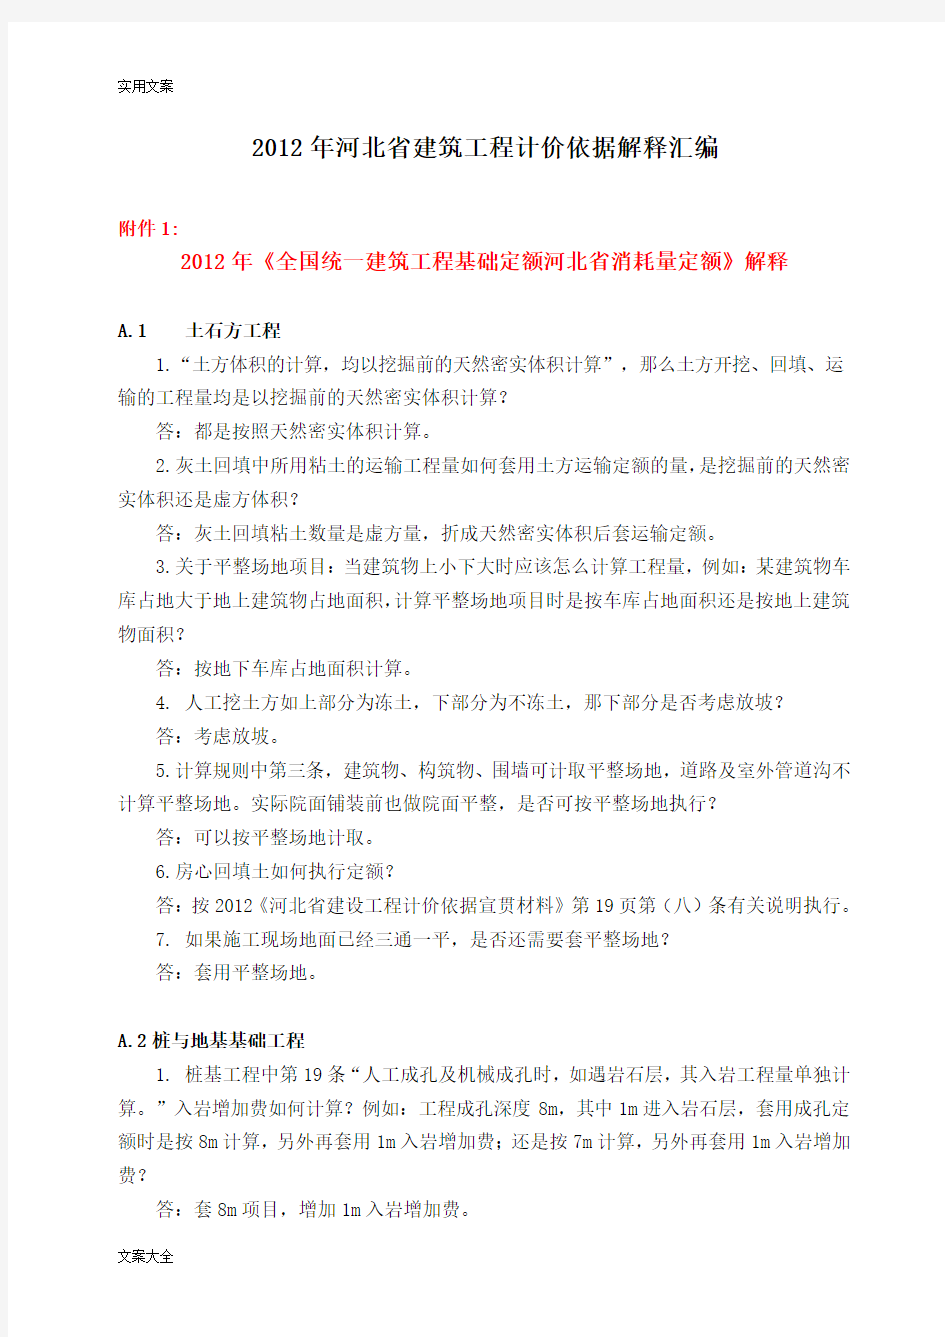 2012版河北省建筑工程计价依据解释总汇编(1-7)